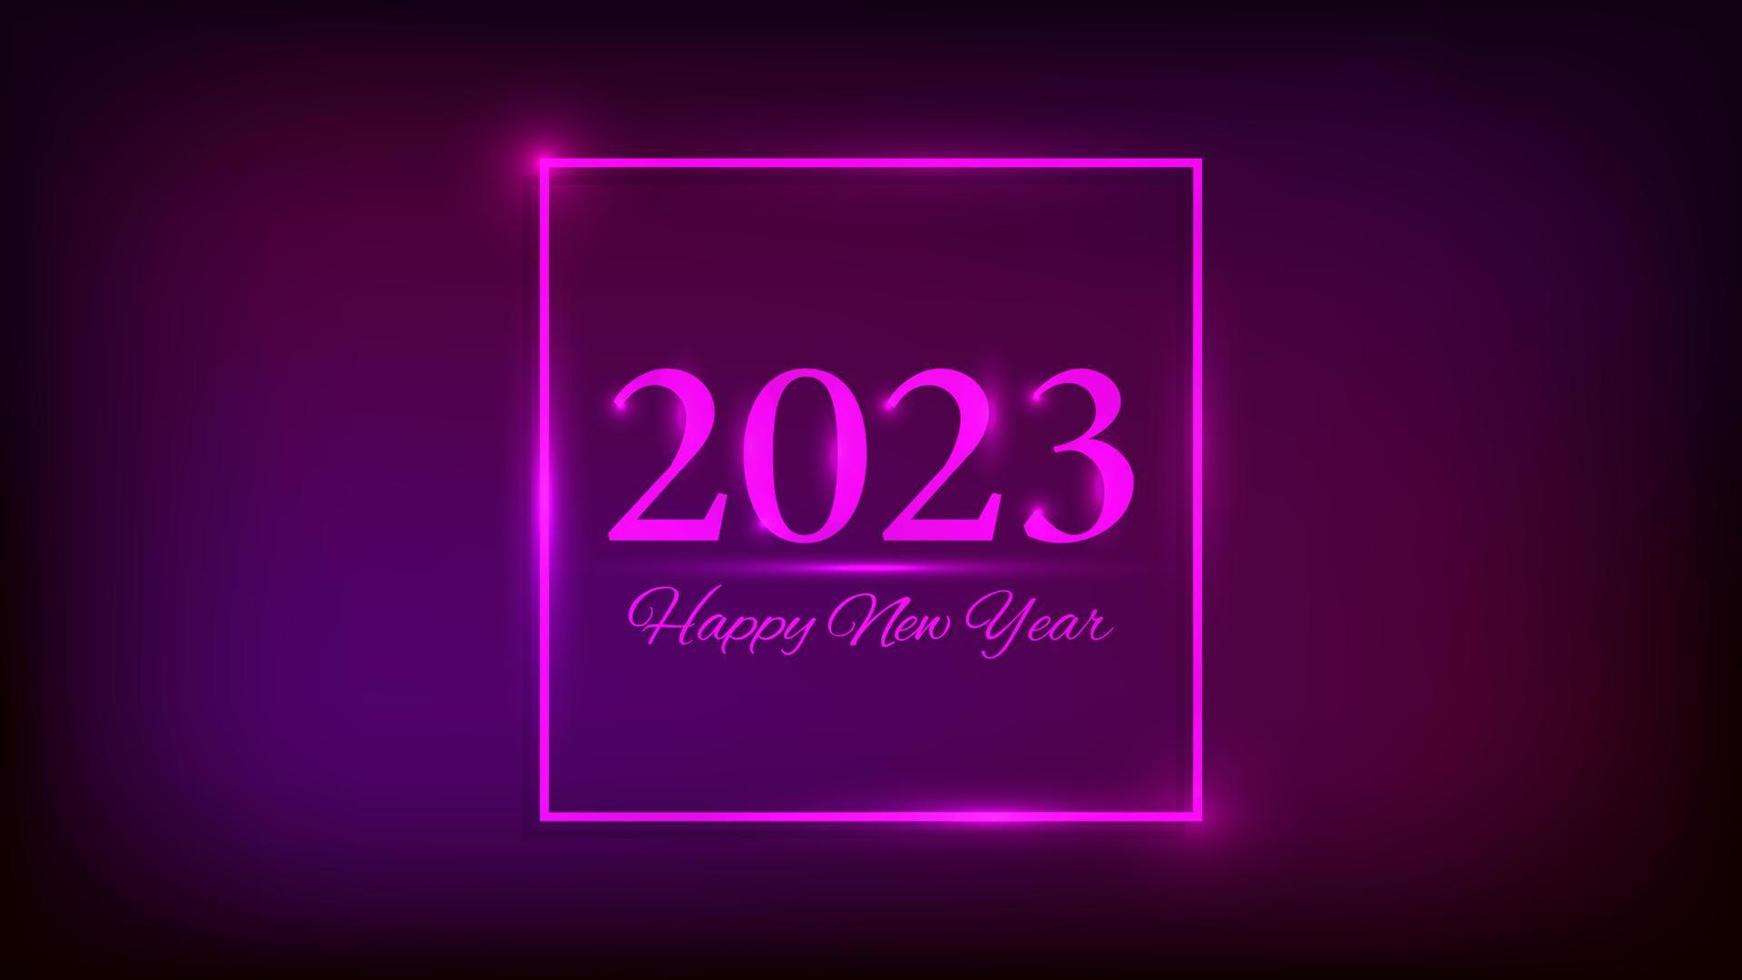 2023 feliz año nuevo fondo de neón. marco cuadrado de neón con efectos brillantes para tarjetas de felicitación navideñas, volantes o carteles. ilustración vectorial vector